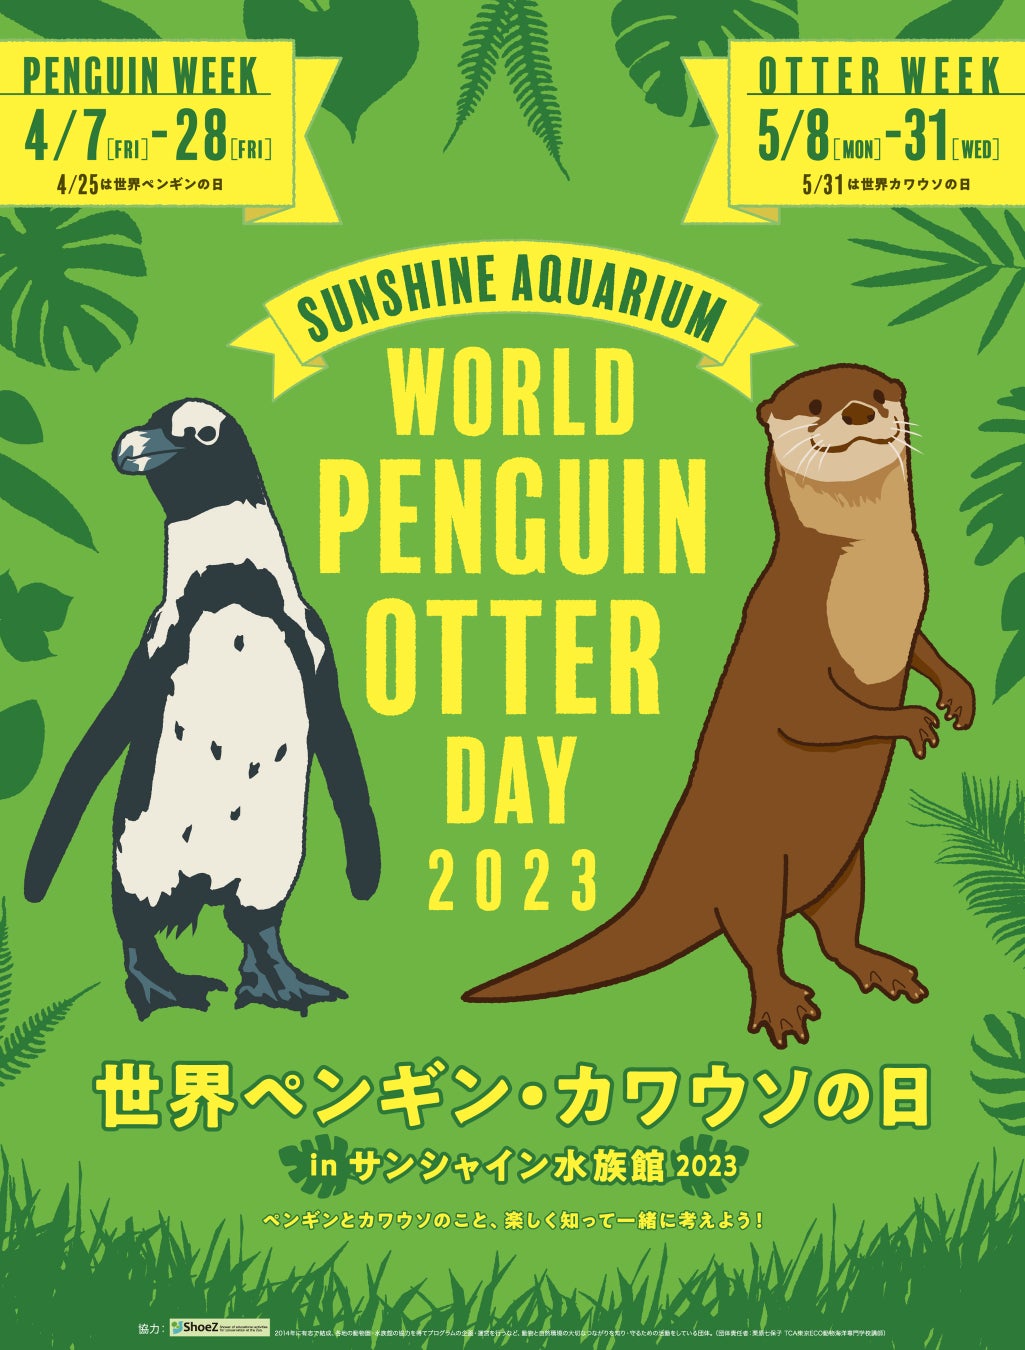 世界ペンギン・カワウソの日 in サンシャイン水族館2023のサブ画像1